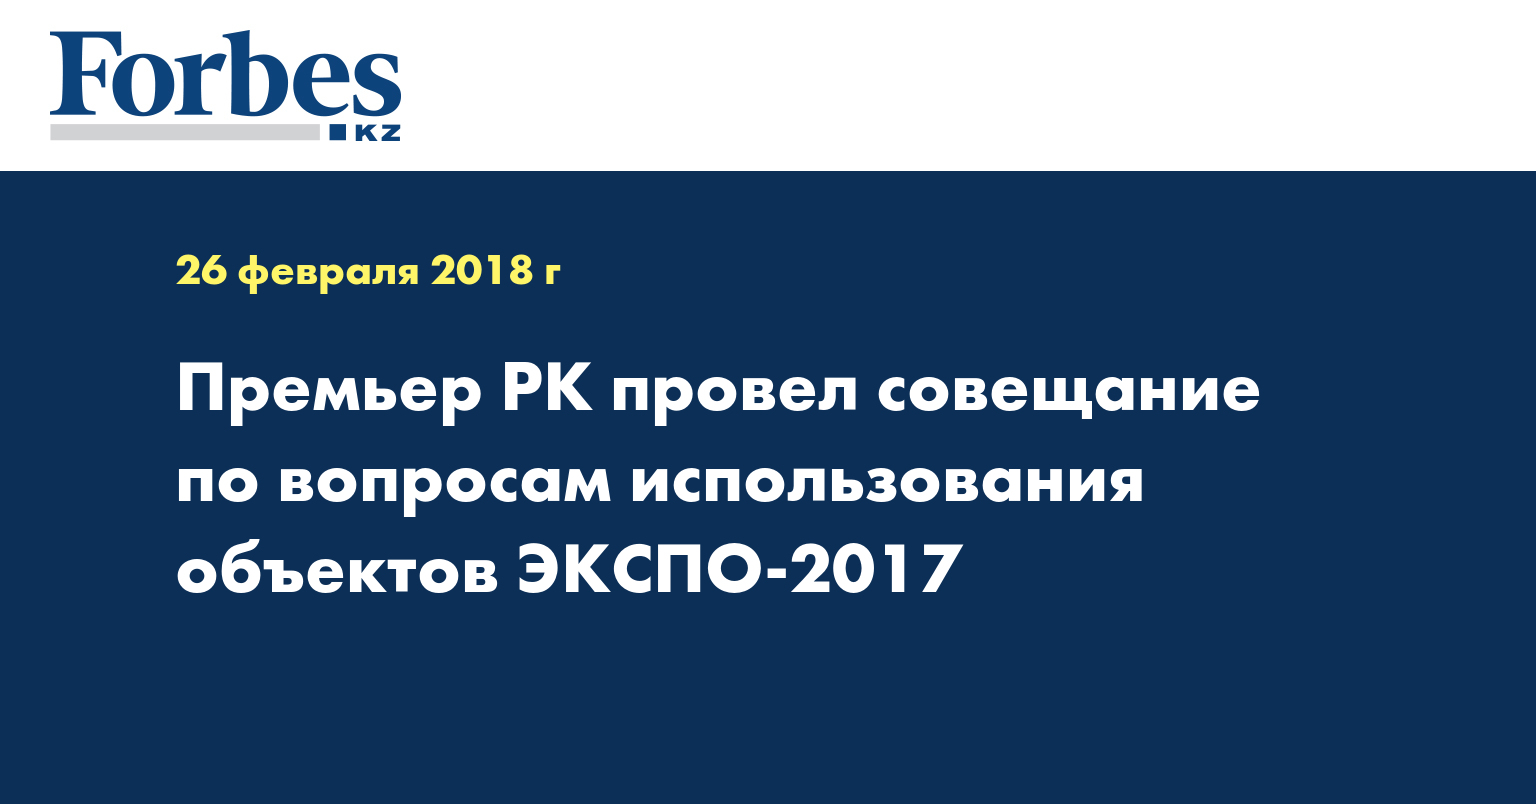 Премьер РК провел совещание по вопросам использования объектов ЭКСПО-2017